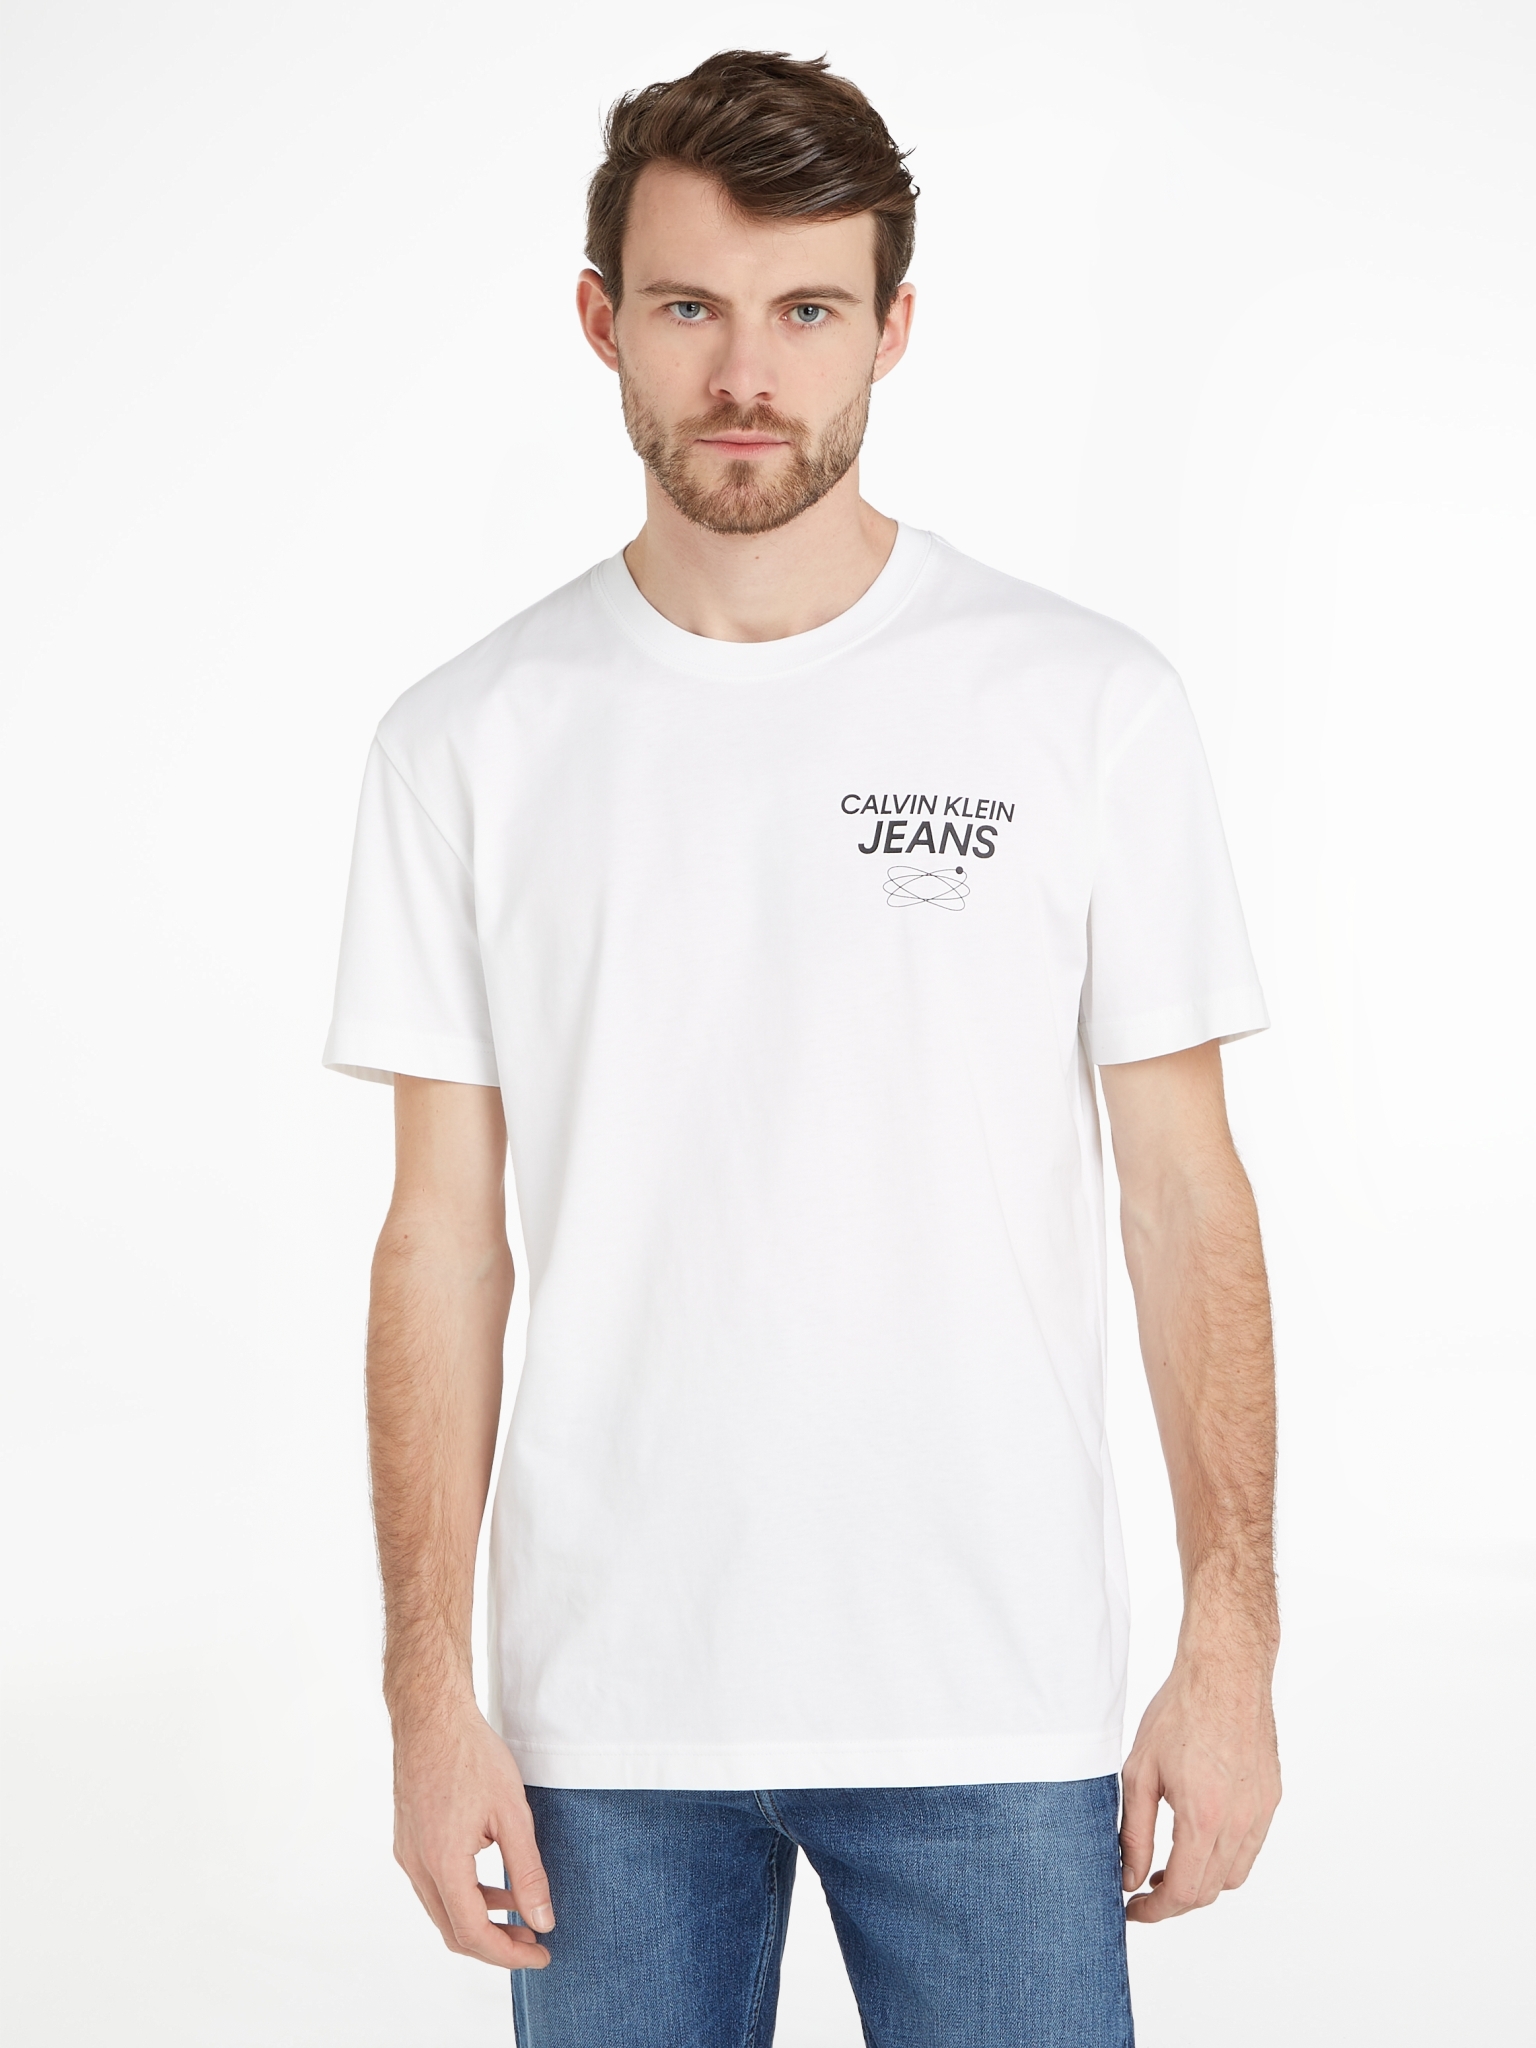 CALVIN KLEIN JEANS T-Shirt aus Baumwolle mit Logo am Rücken 10716438 kaufen  | WÖHRL | T-Shirts